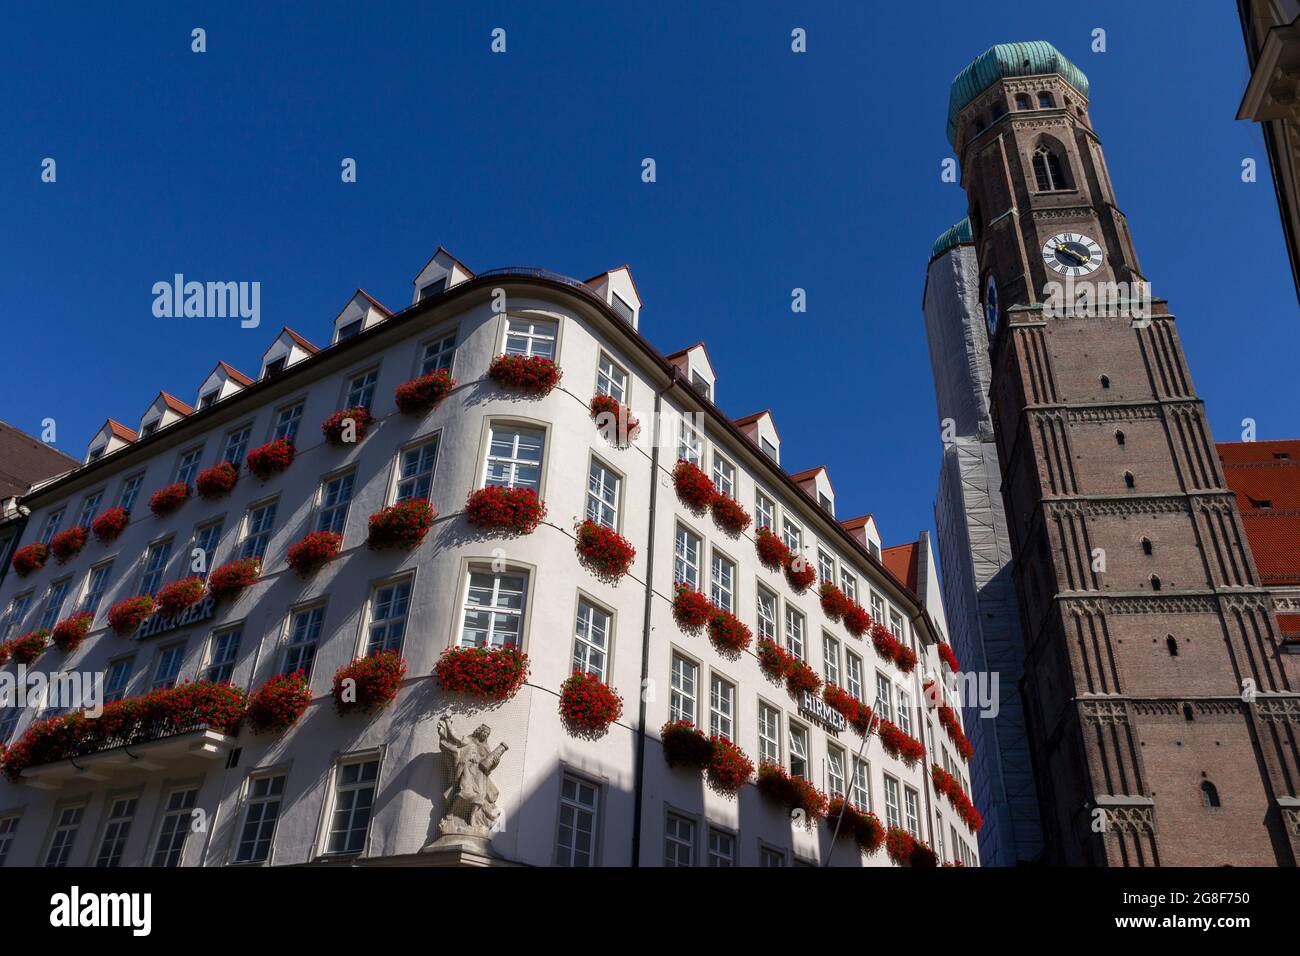 München, Deutschland - 08 26 2011: Gebäude zum Schonen Turm (der schöne Turm) das Hirmer-Modegeschäft in der Kaufinger straße nahe dem Marienplatz. Muni Stockfoto